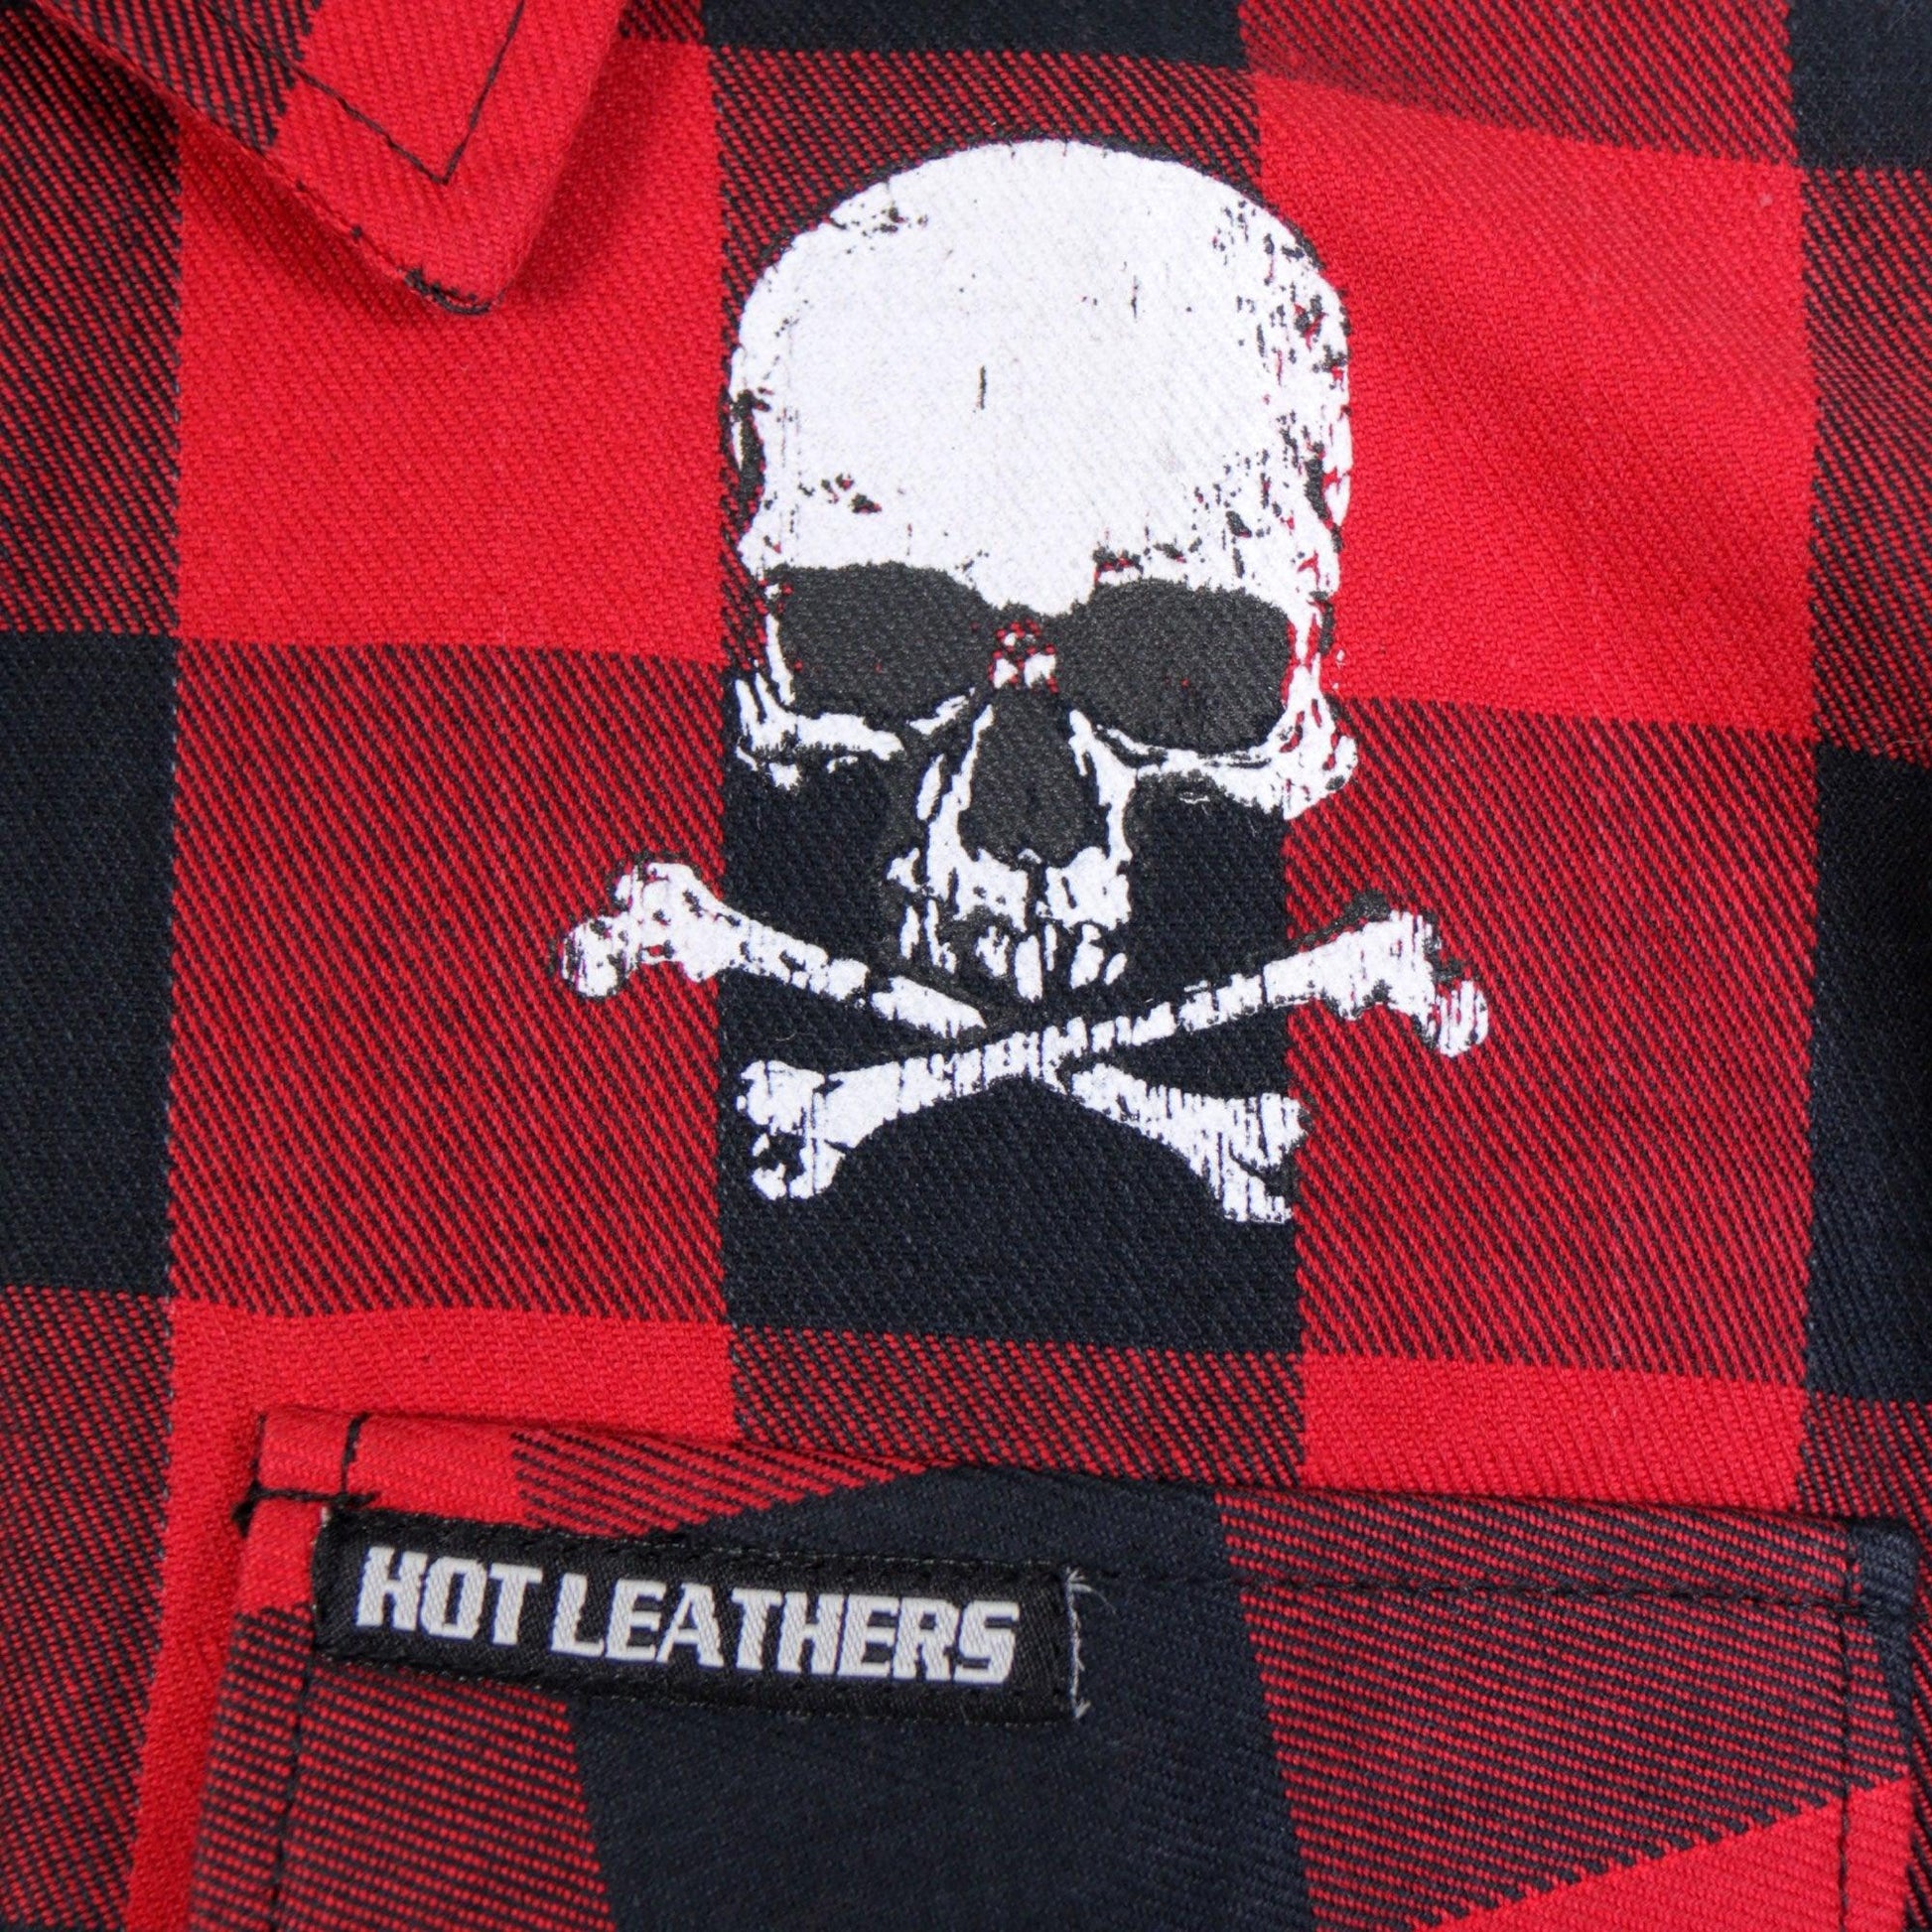 Long Sleeve Skull Bones Biker Flannel Shirt for Men - Military Republic